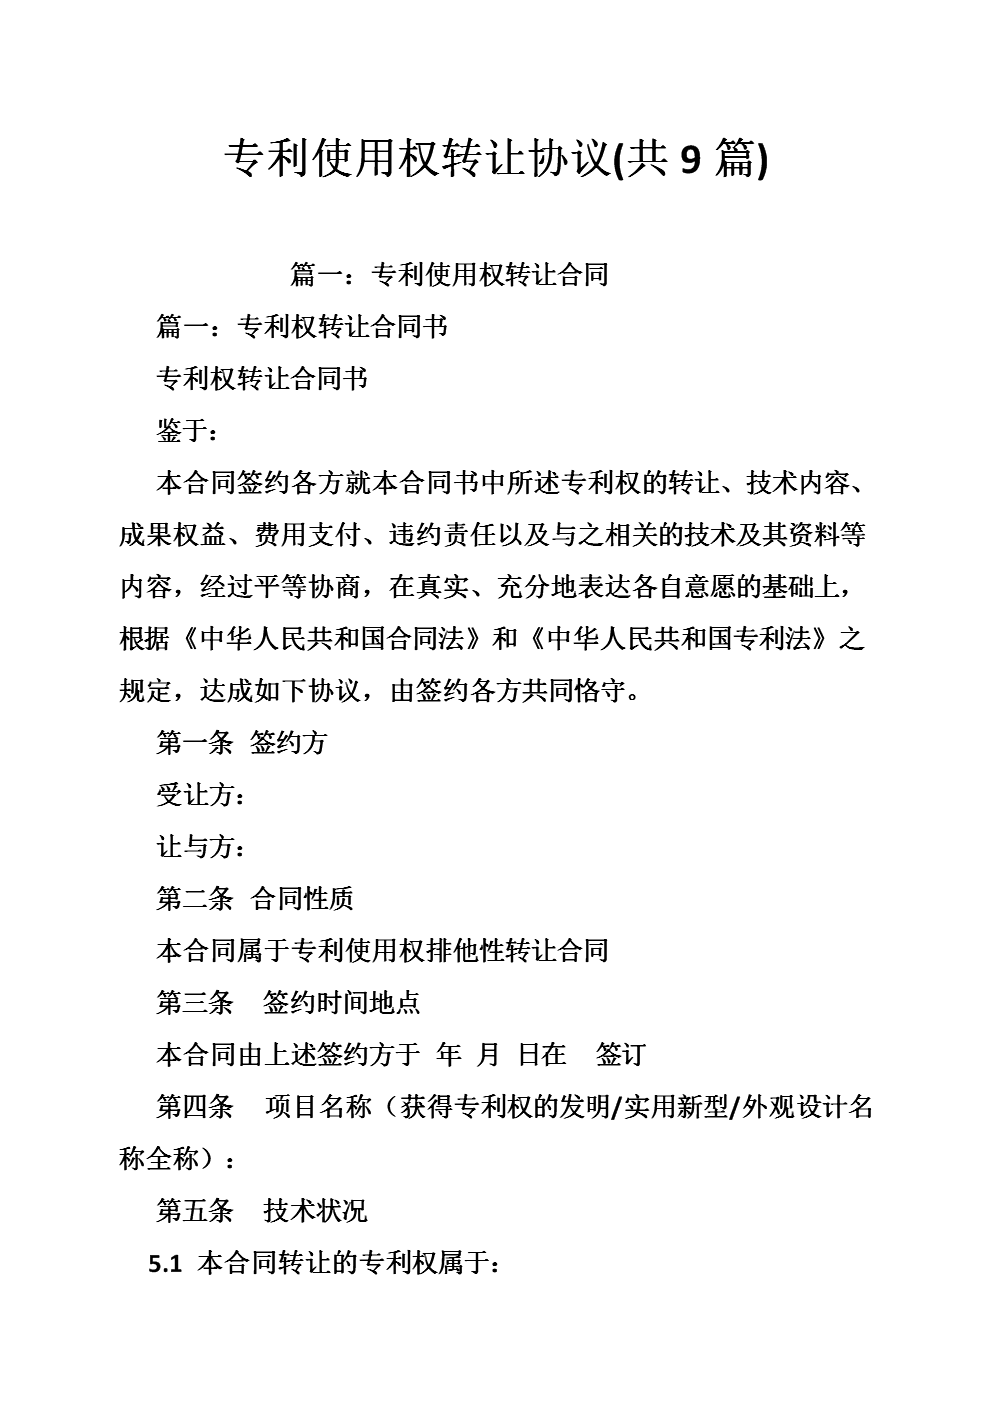 
上海事业单位招聘2015年4月14日合同流程详解